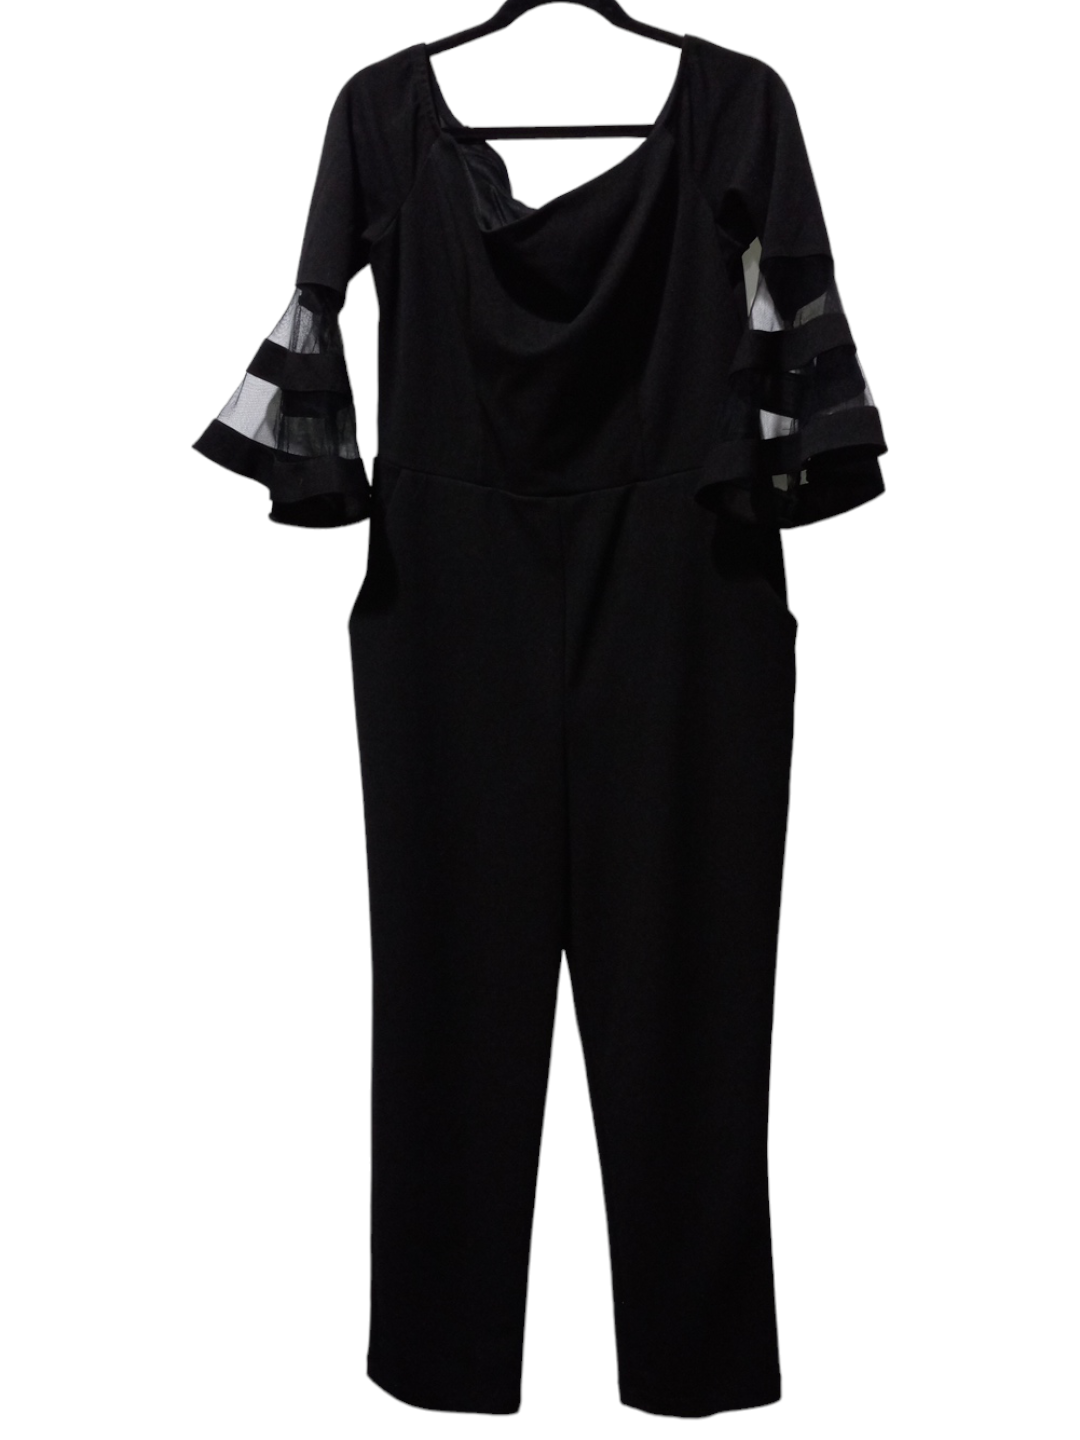 Black Jumpsuit Clothes Mentor, Size L